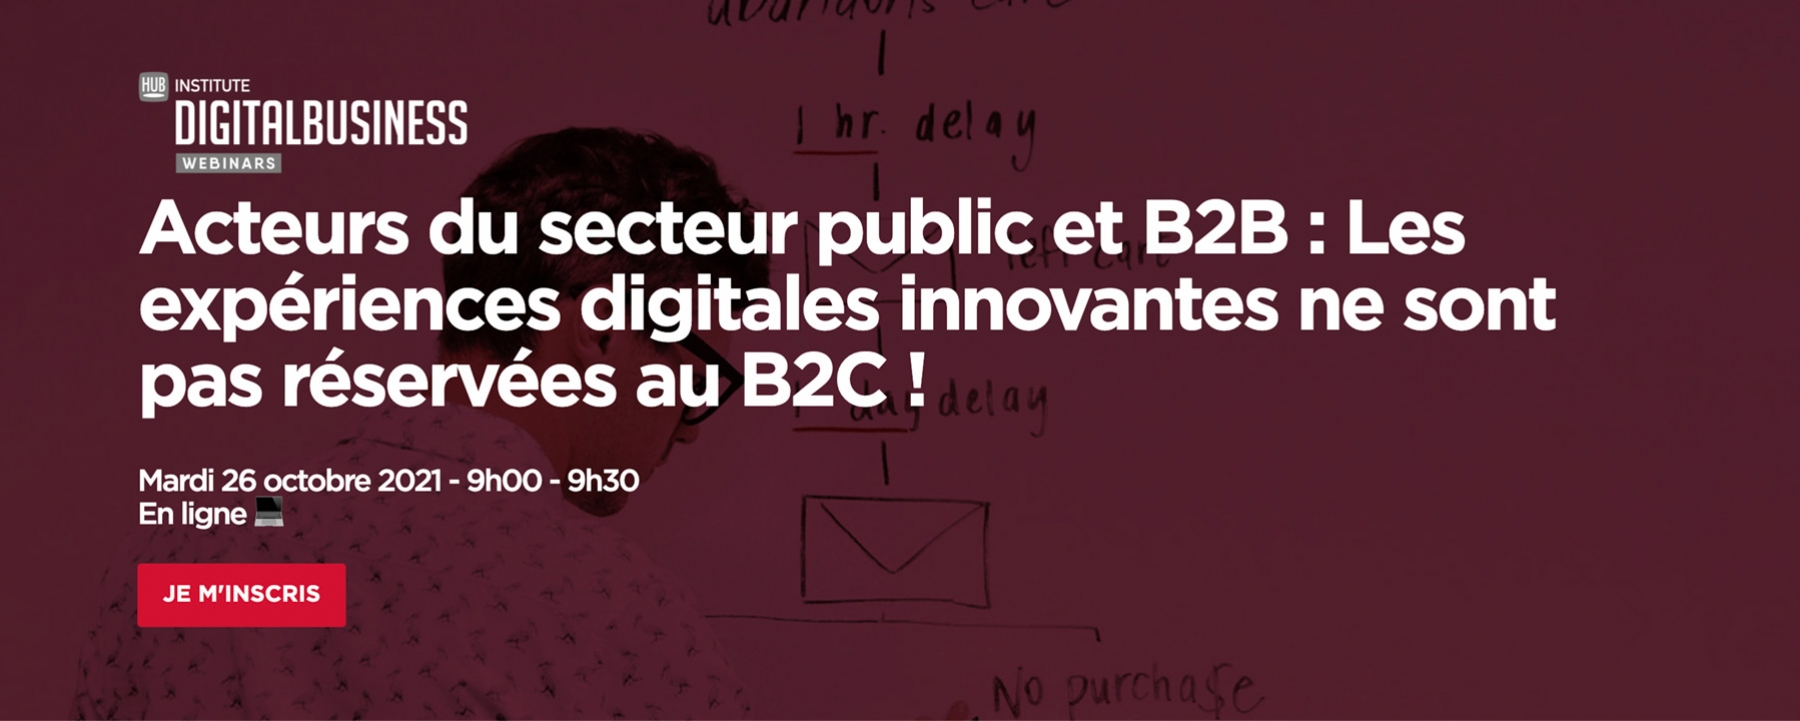 Acteurs du secteur public et B2B : Les expériences digitales innovantes ne sont pas réservées au B2C !